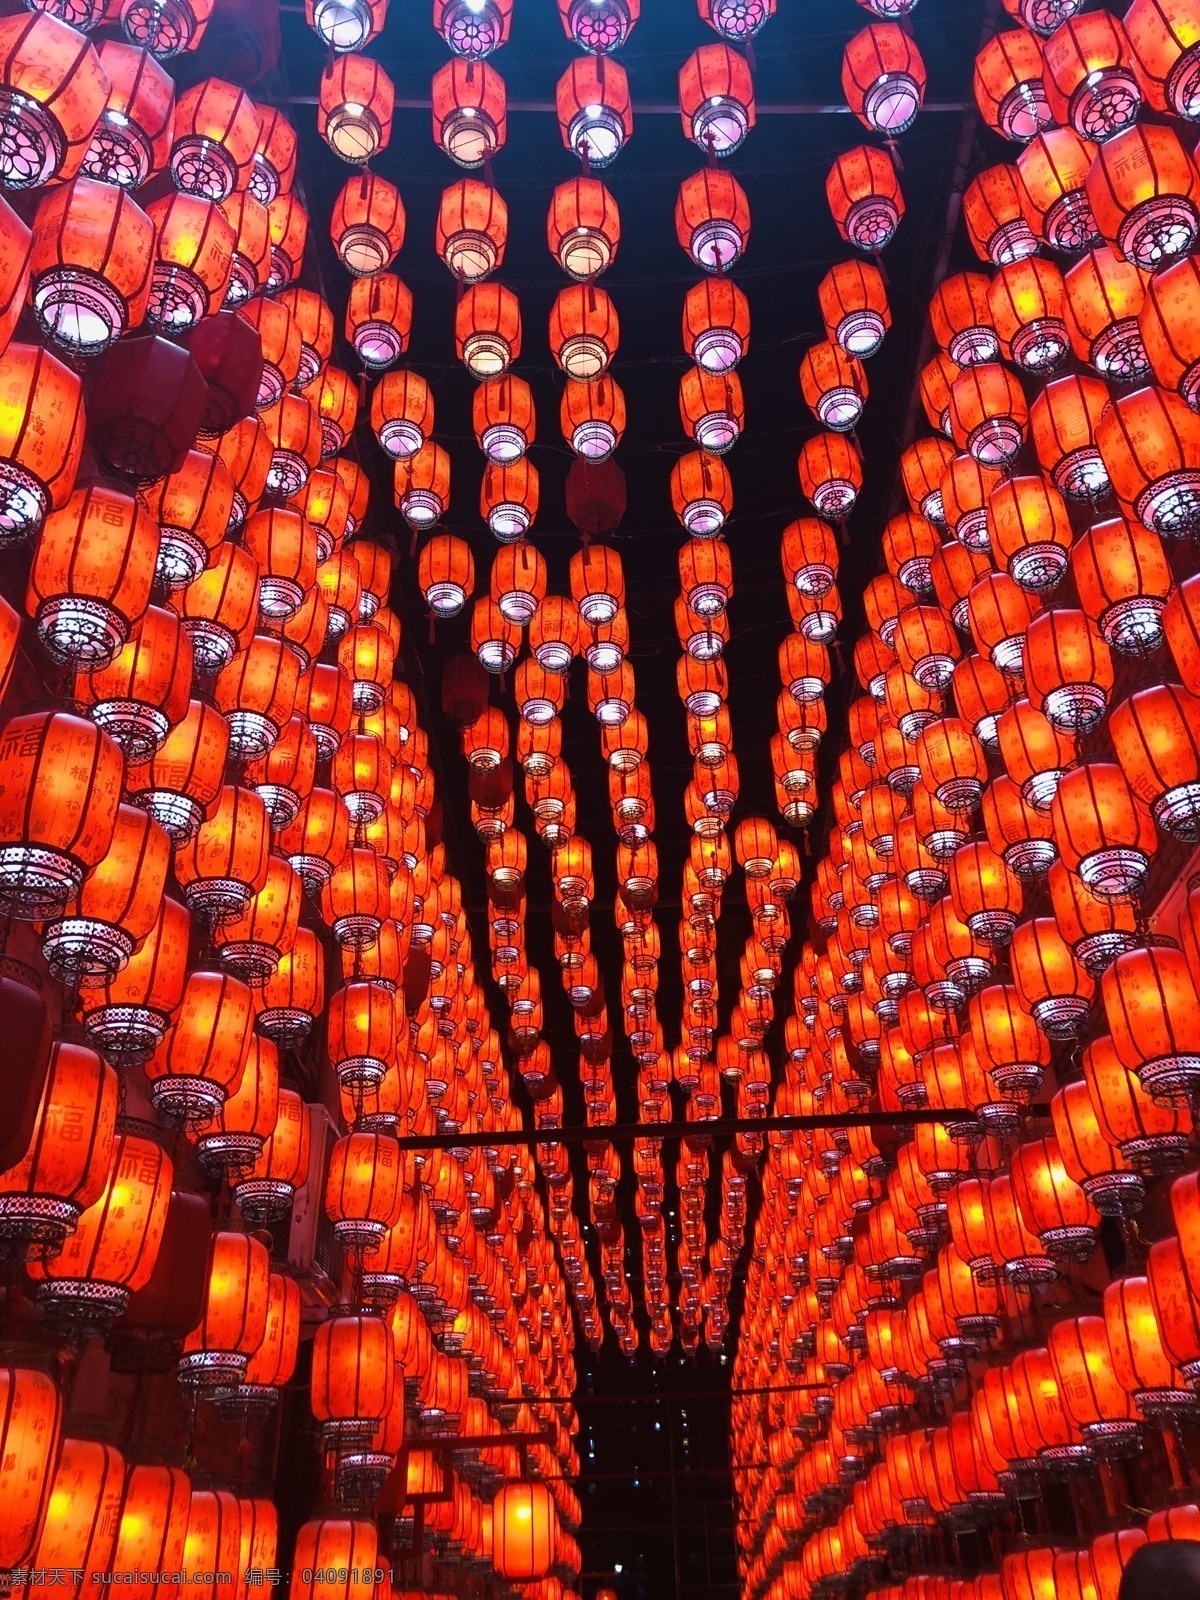 灯笼 中国 文化 传统 张灯结彩 许愿红灯笼 春节灯笼 灯饰 旅游摄影 人文景观